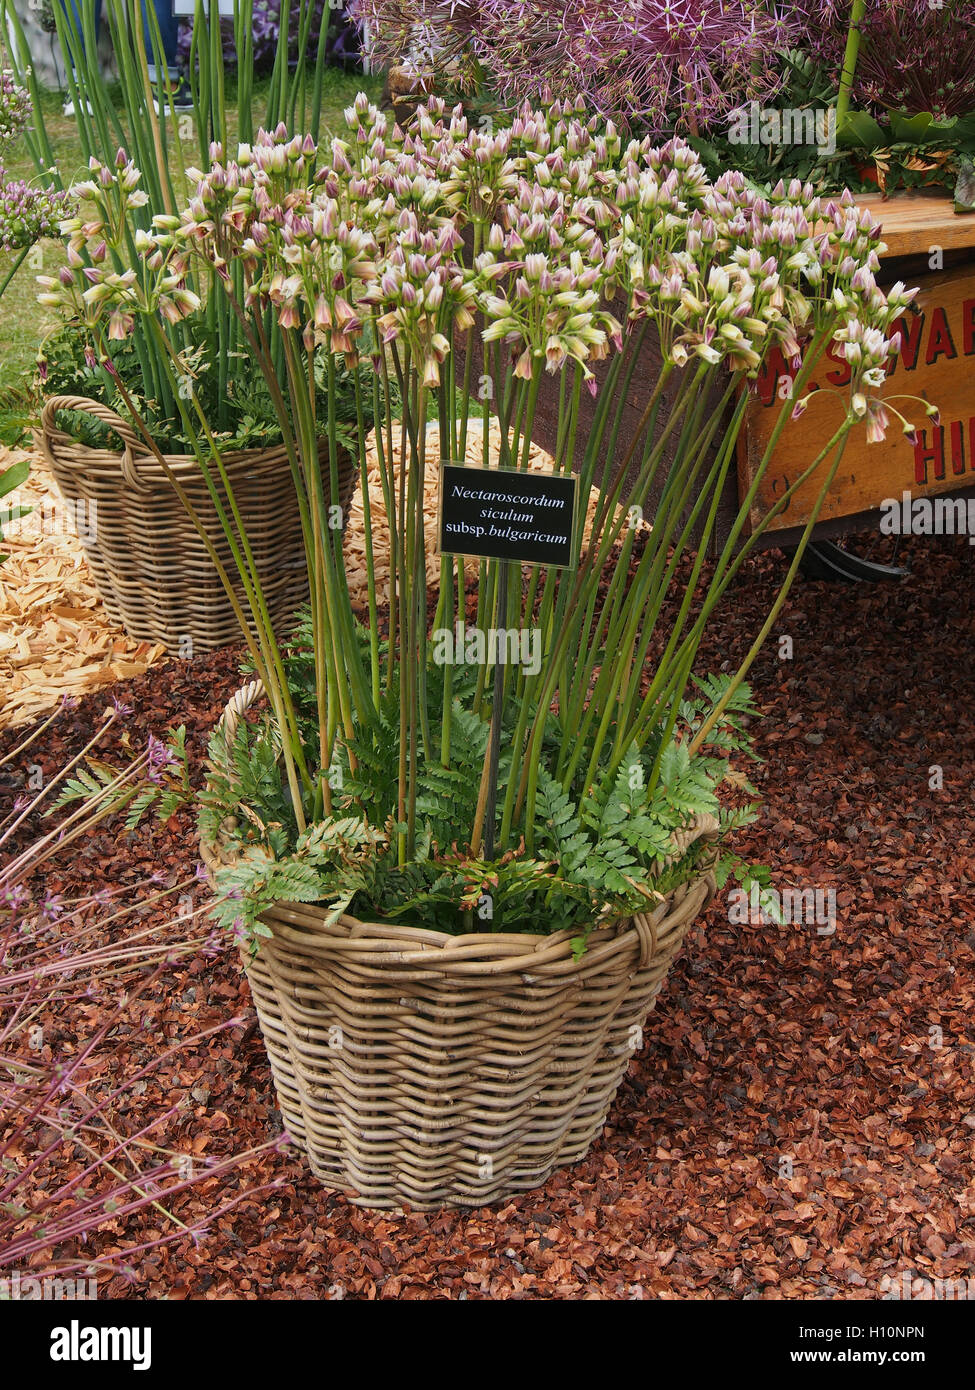 Weidenkorb der Nectaroscordum Siculum, Subspecies Bulgaricum (sizilianische Honig Knoblauch) bei RHS Tatton Park Flower Show 2016 in Cheshire, England, UK. Stockfoto